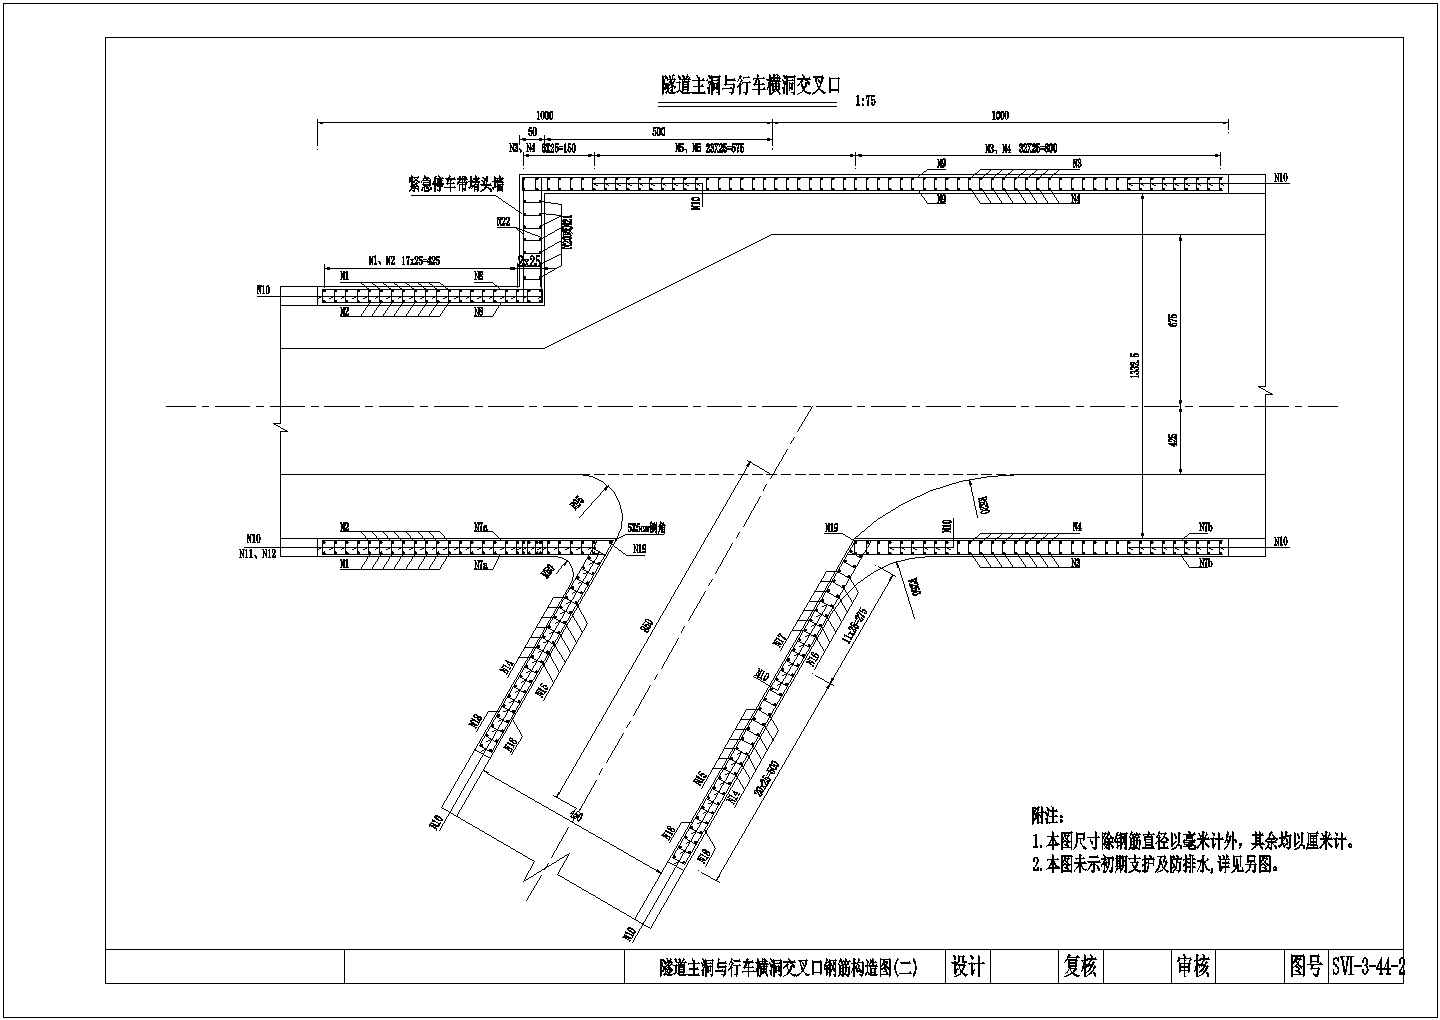 双线分离式隧道车行横洞构造节点详图设计